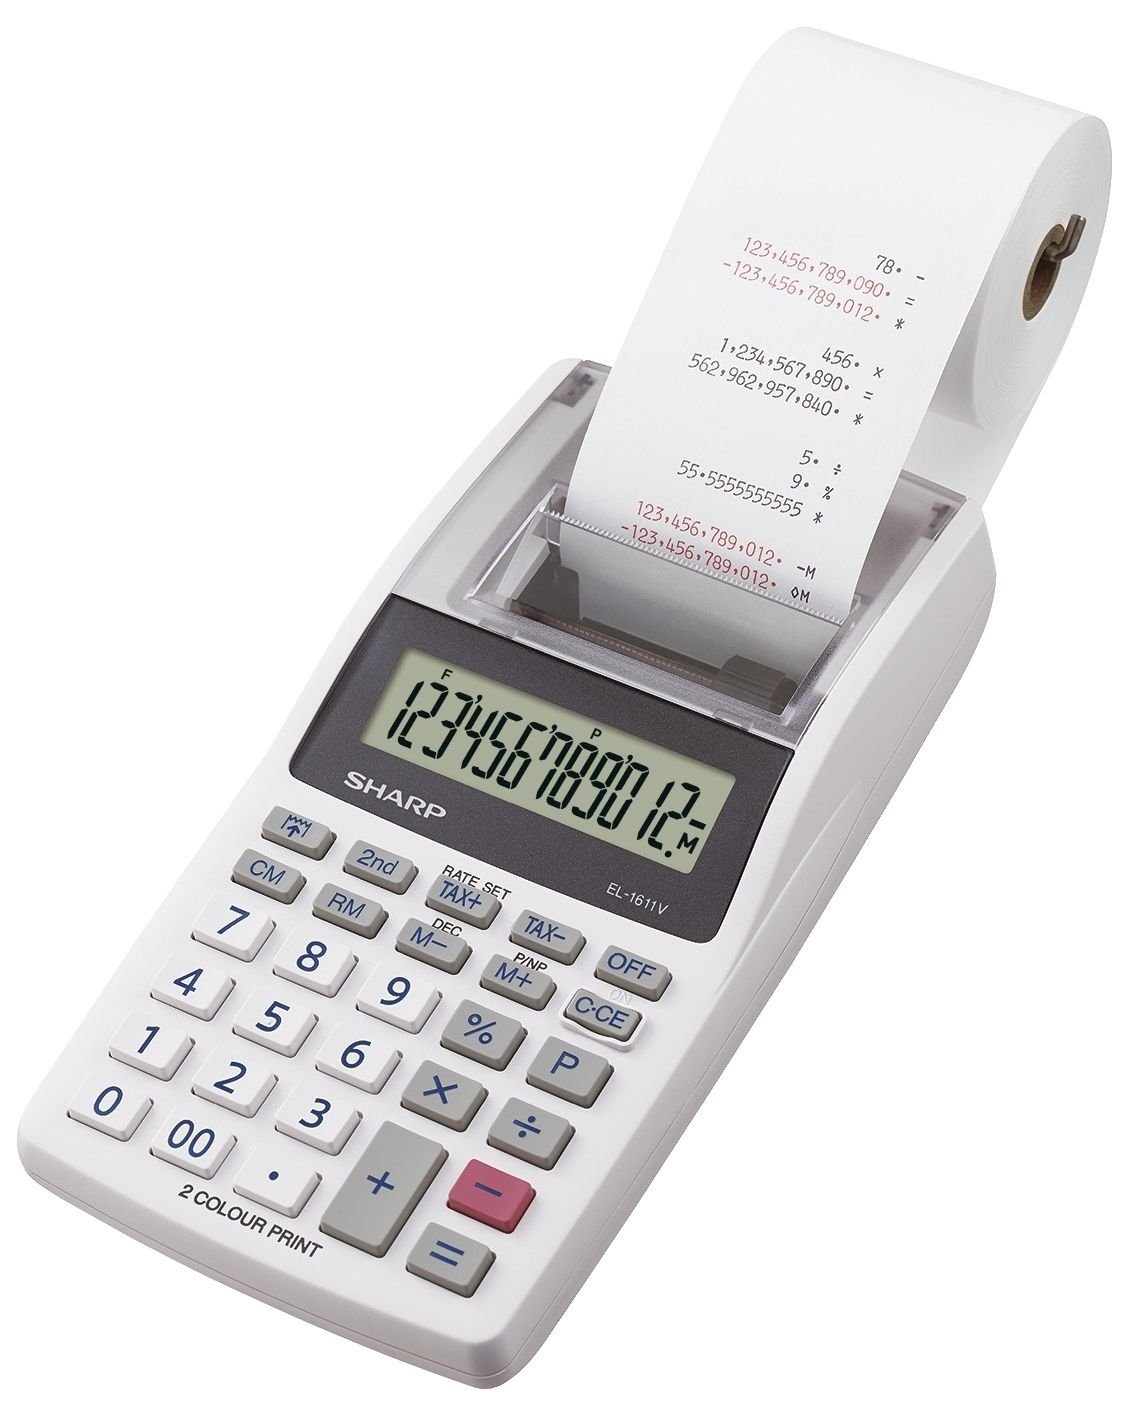 Sharp Taschenrechner - 96 12-stellig, 40 x druckend, mm, Tischrechner EL-1611V x weiß 191